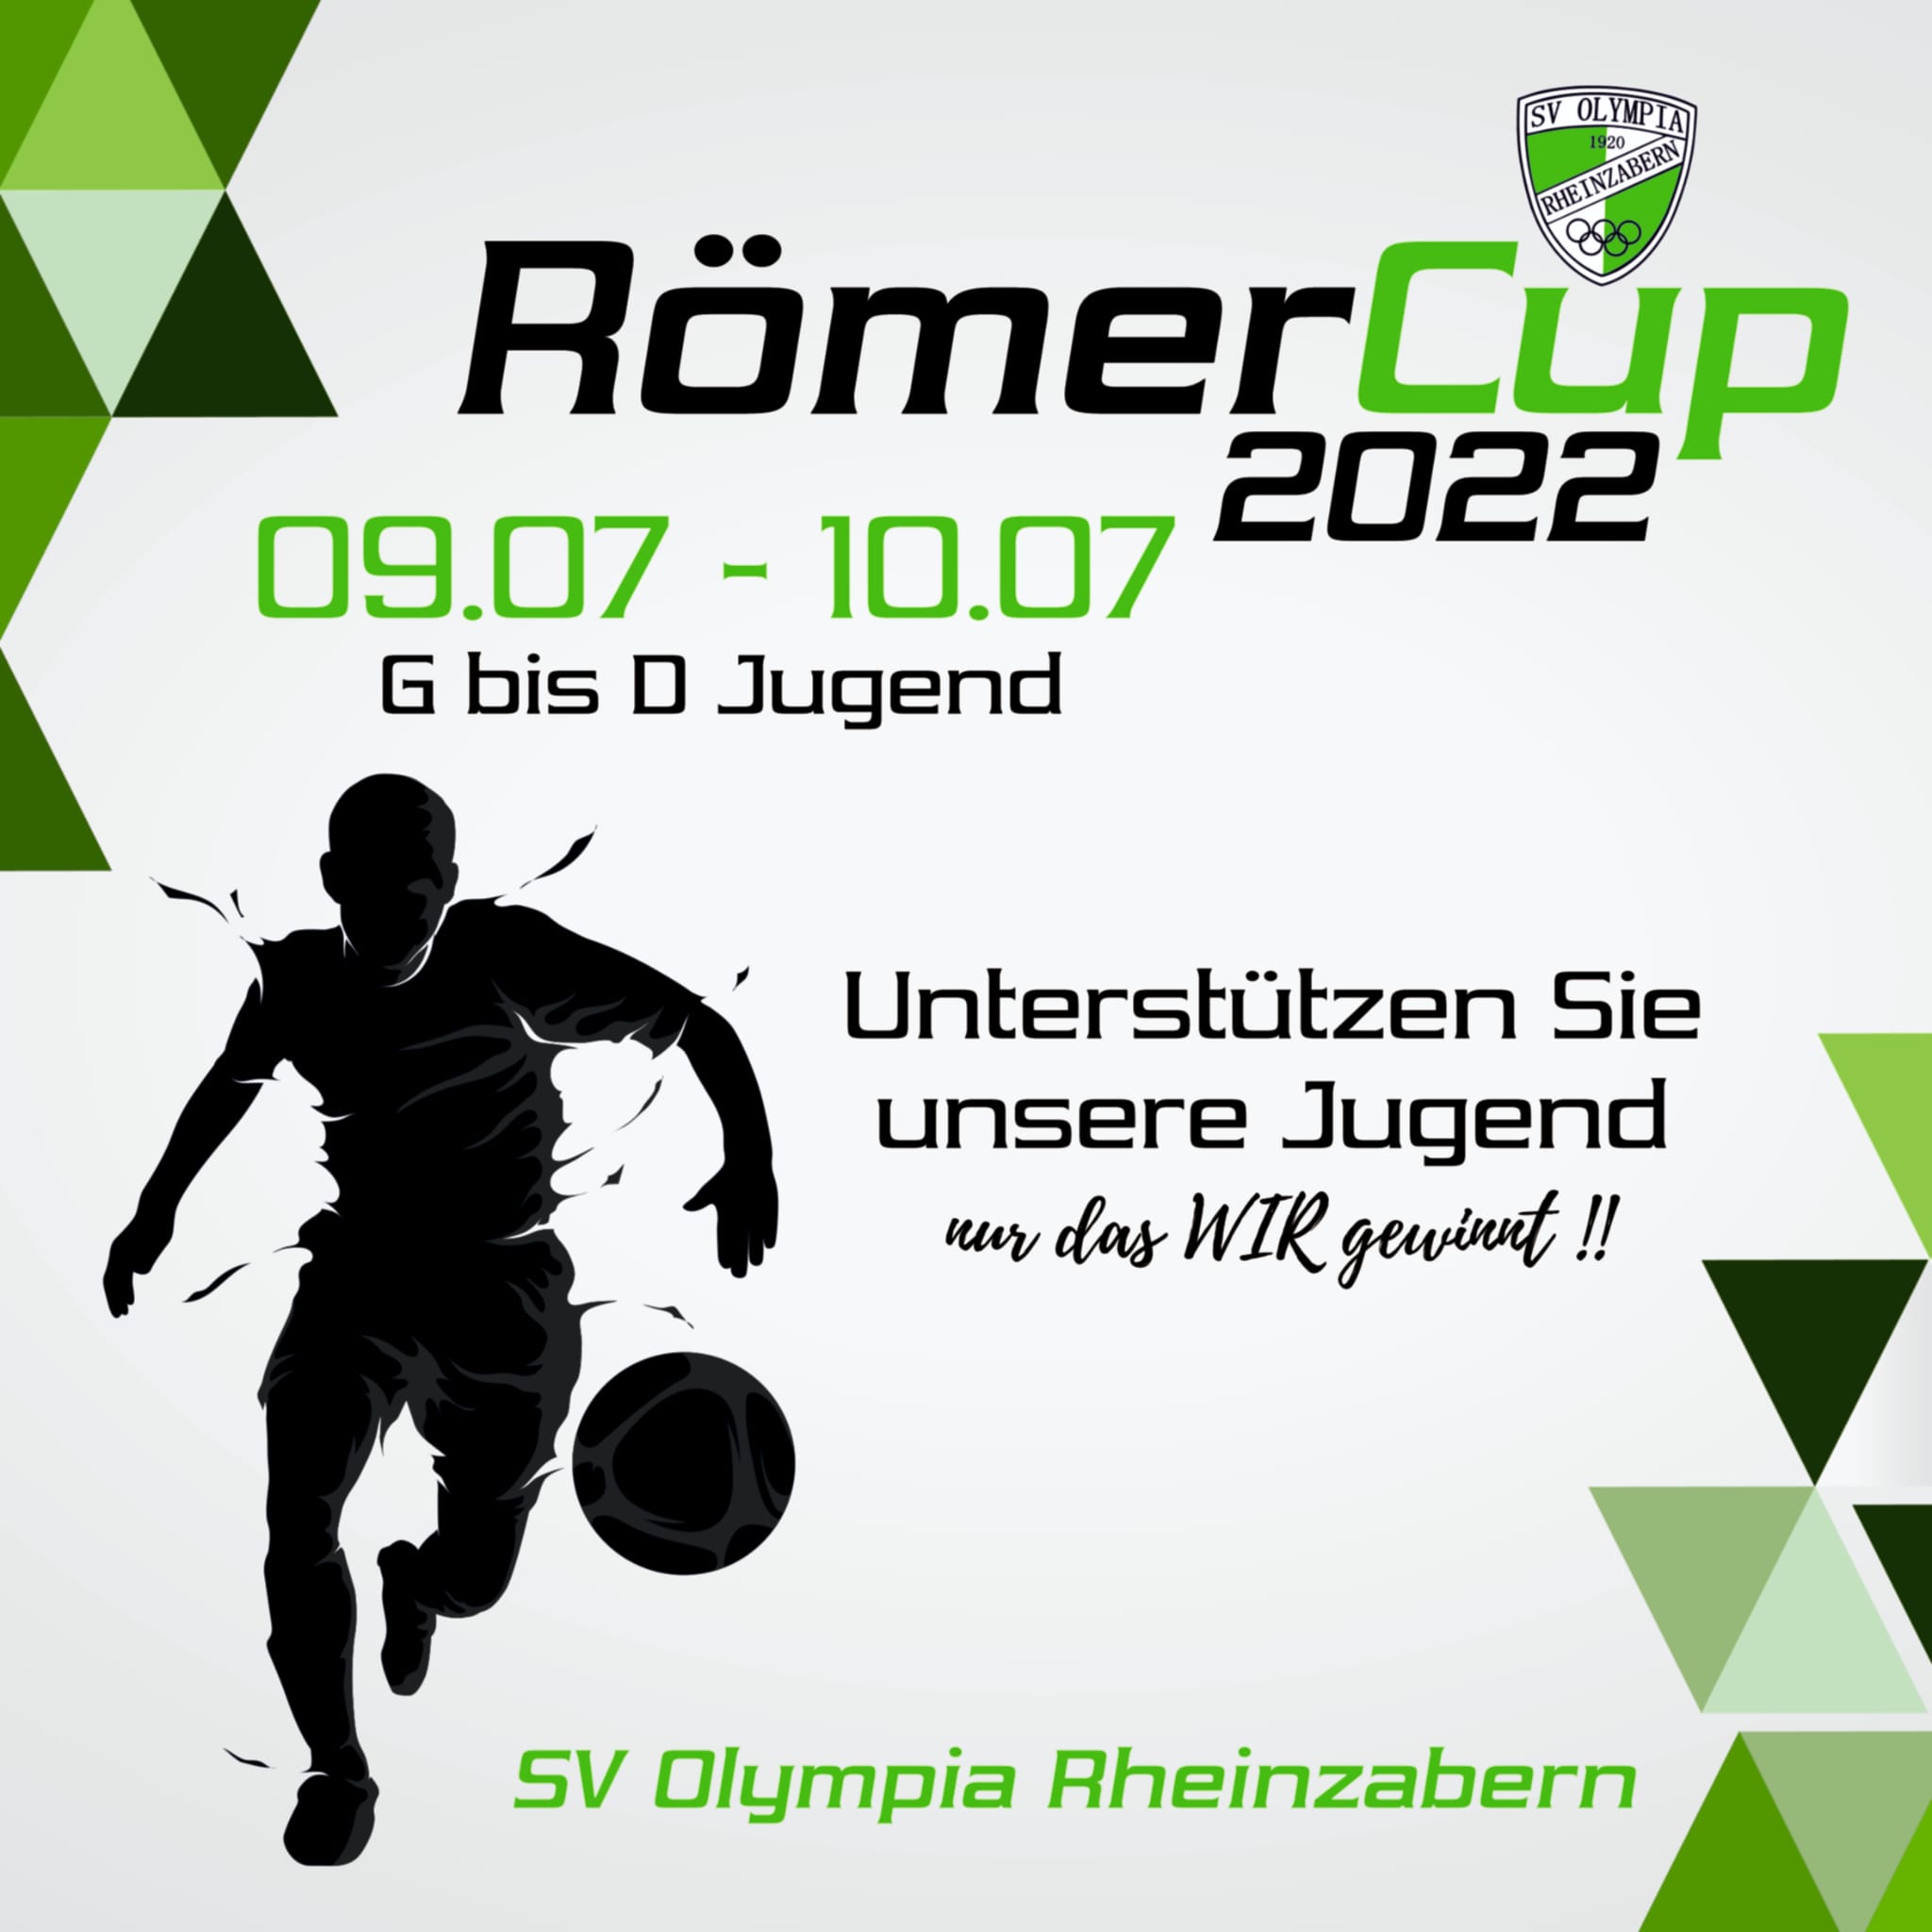 Römercup 2022